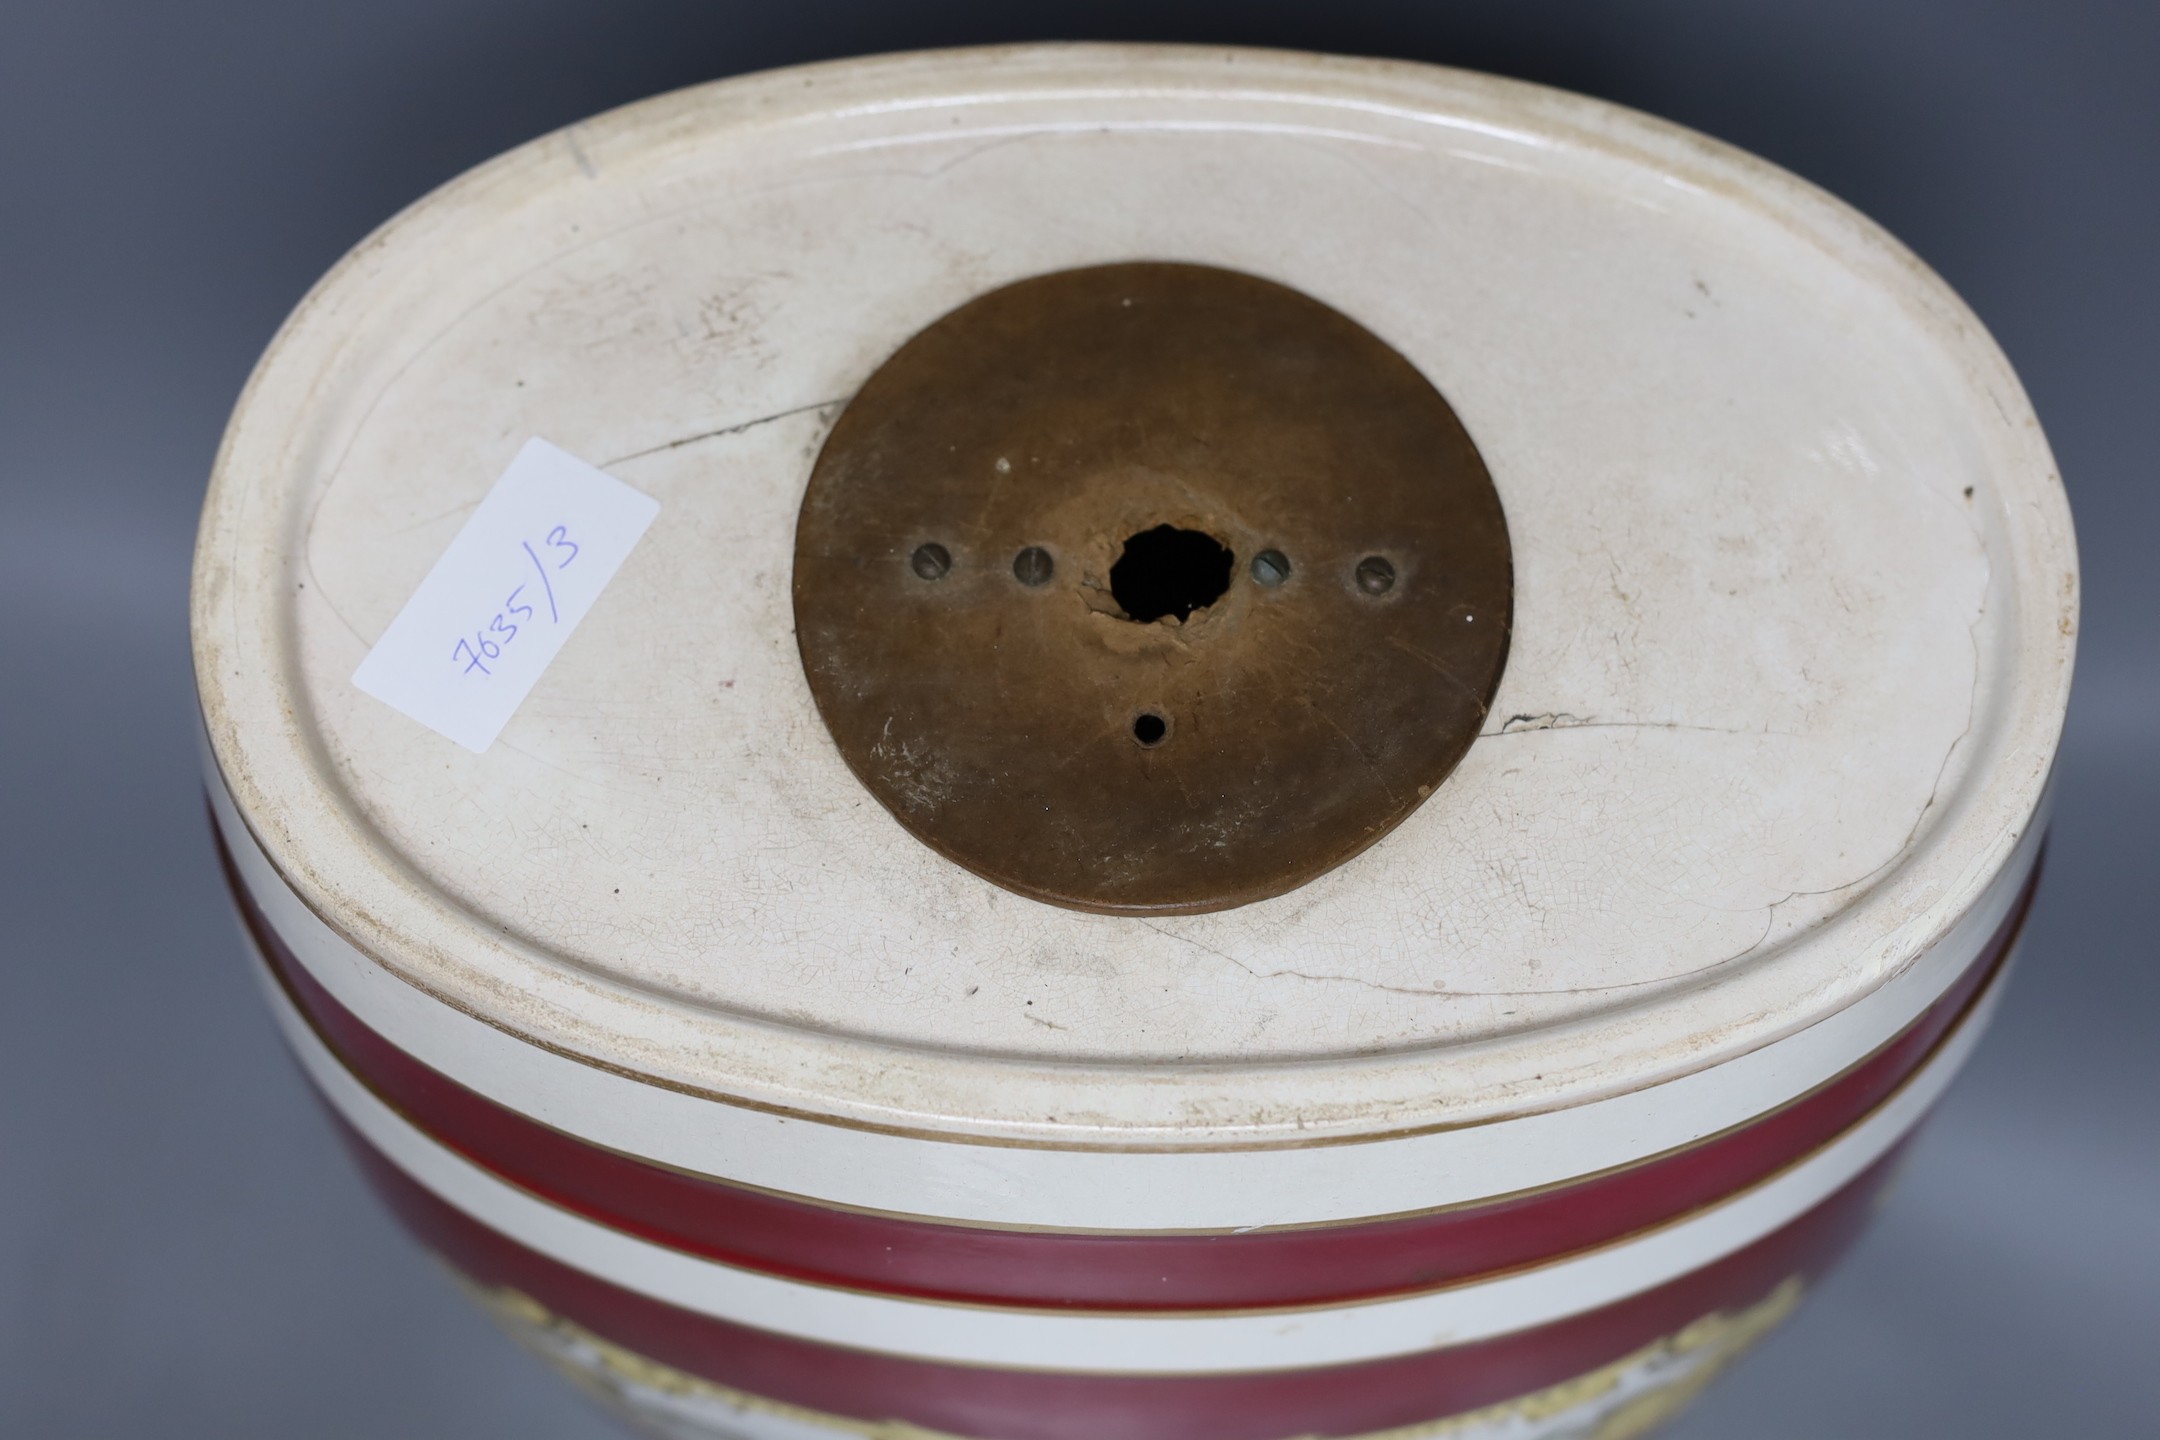 A glazed pottery ‘S.Whisky’ barrel, 36cm